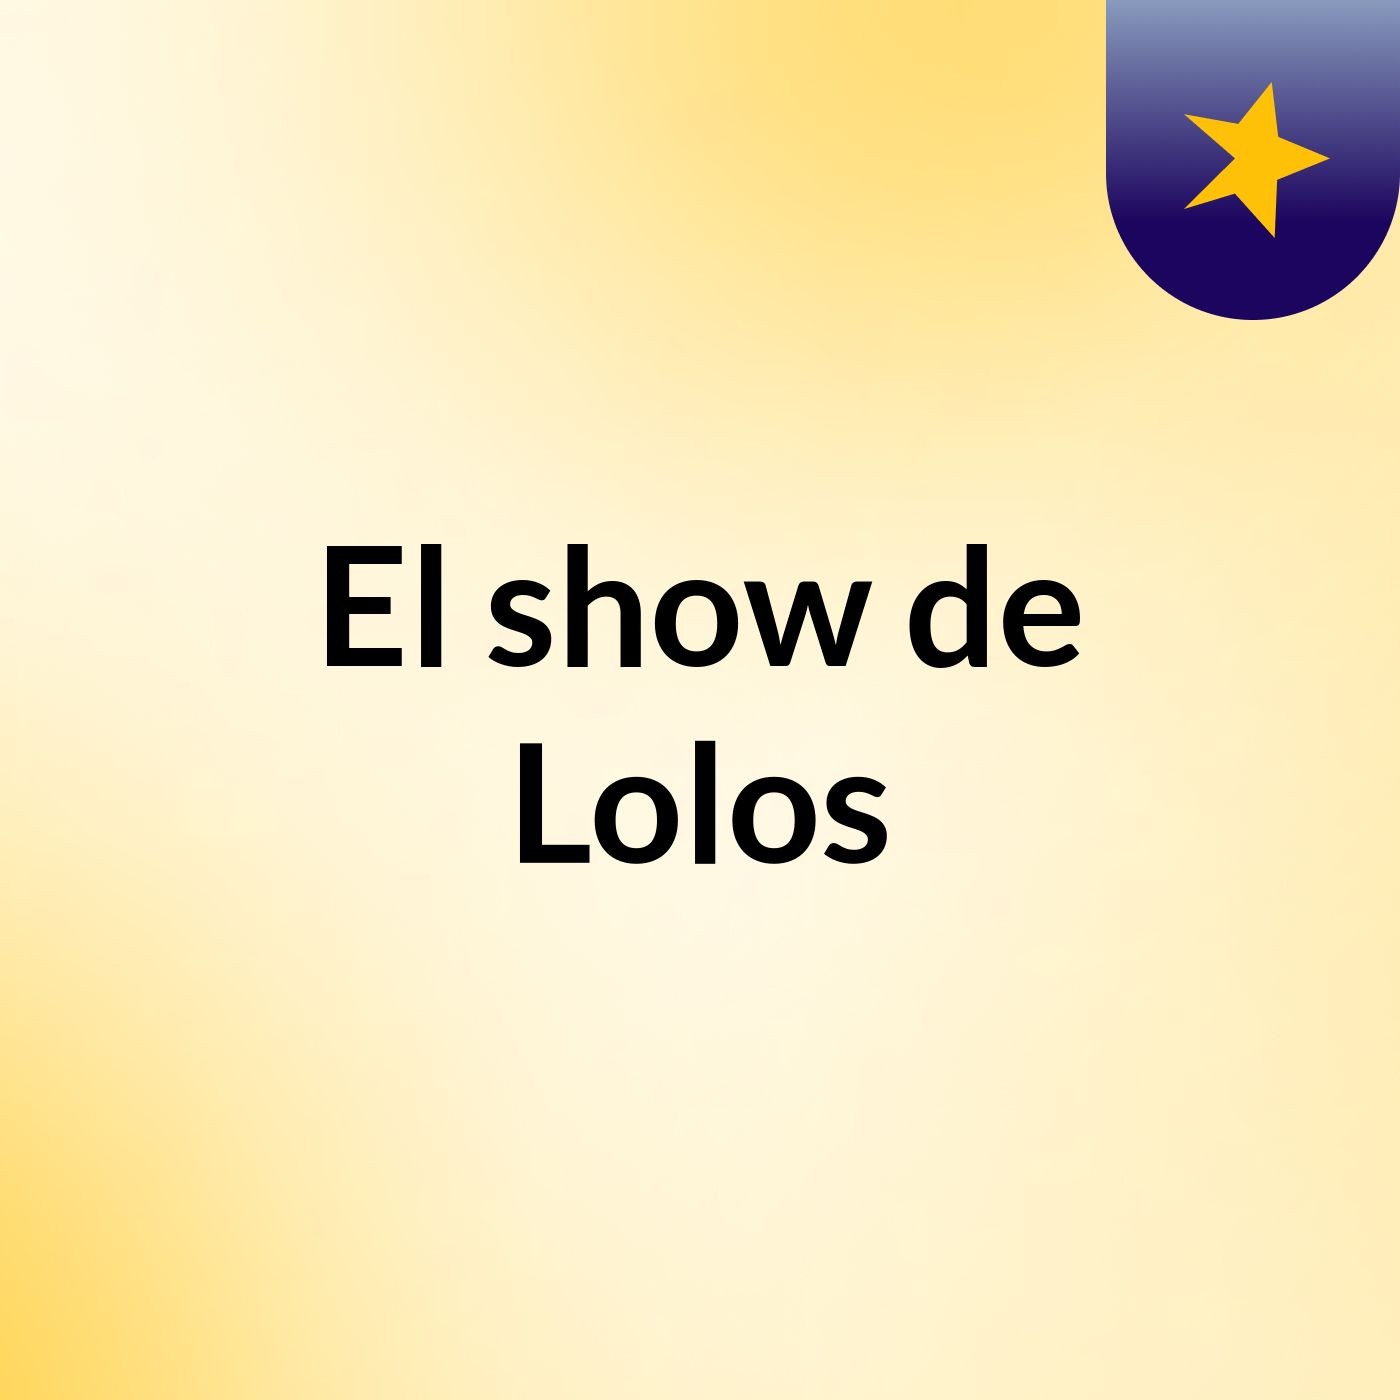 El show de Lolos